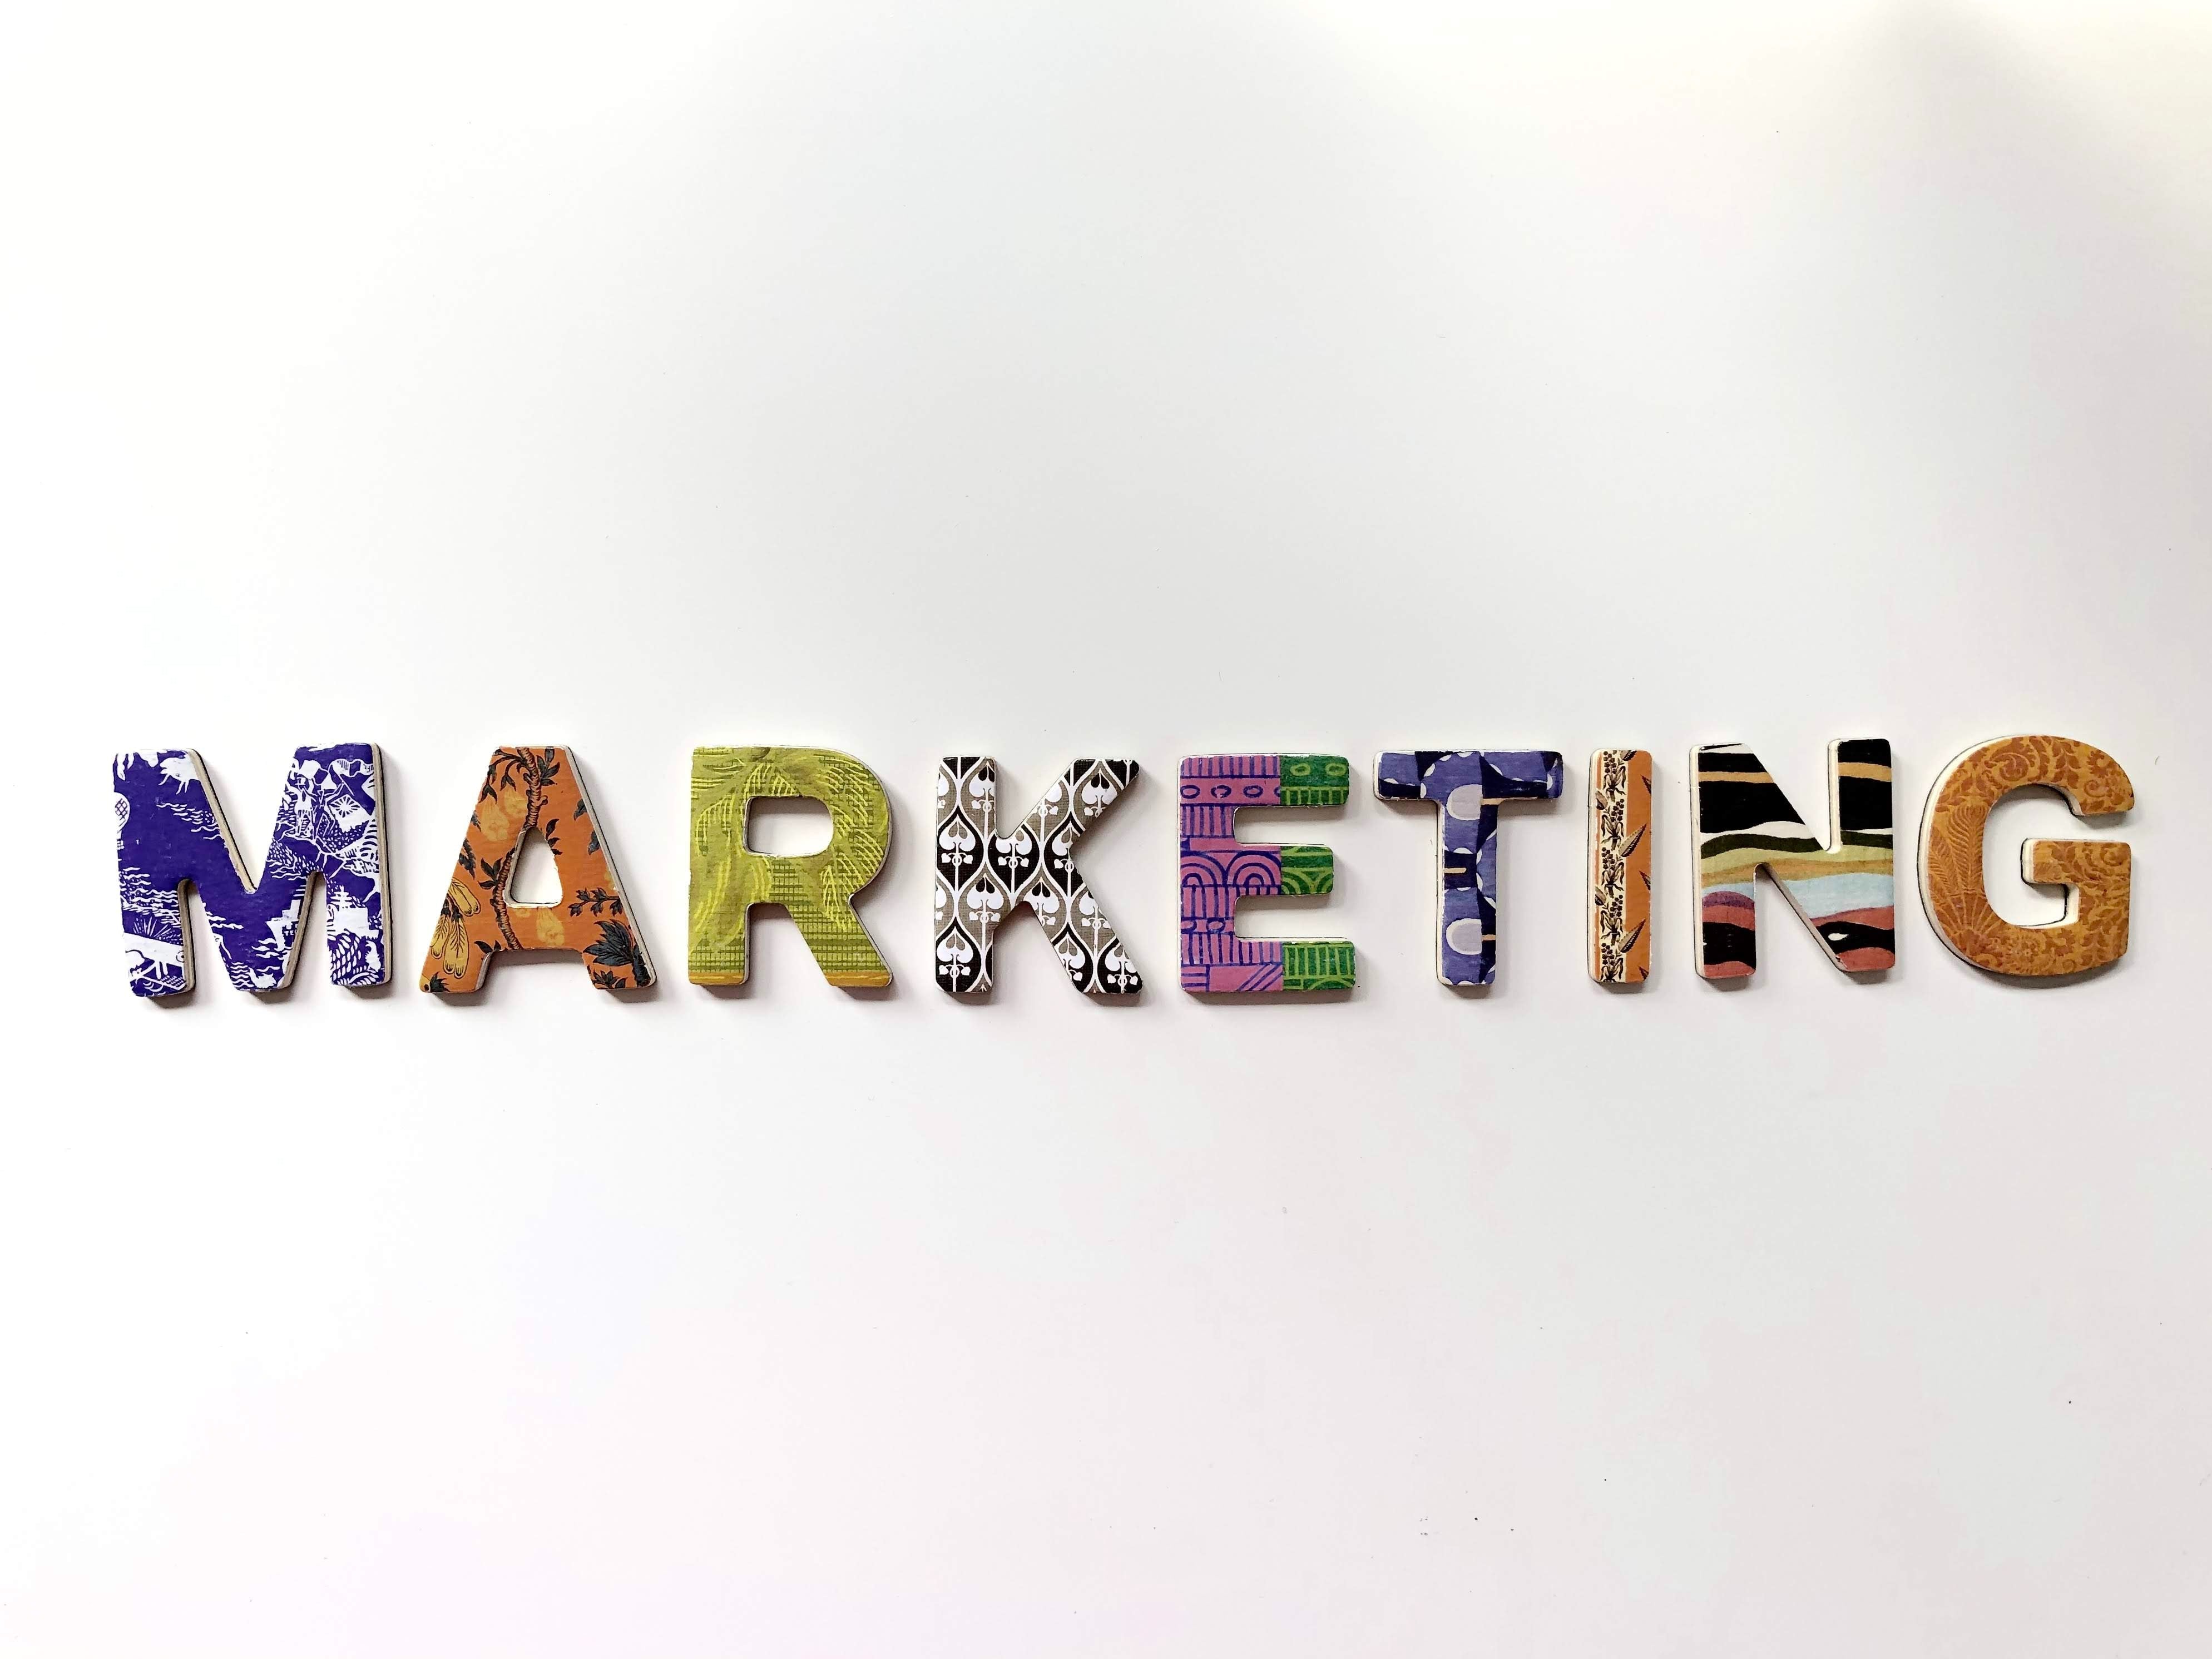 Das Wort "Marketing" durch einzelne Buchstaben in unterschiedlichem Look dargestellt. Dropshipping anfangen ist das eine, ein erfolgreiches Business aufbauen das andere. Marketing ist im Wettbewerbsumfeld unverzichtbar.